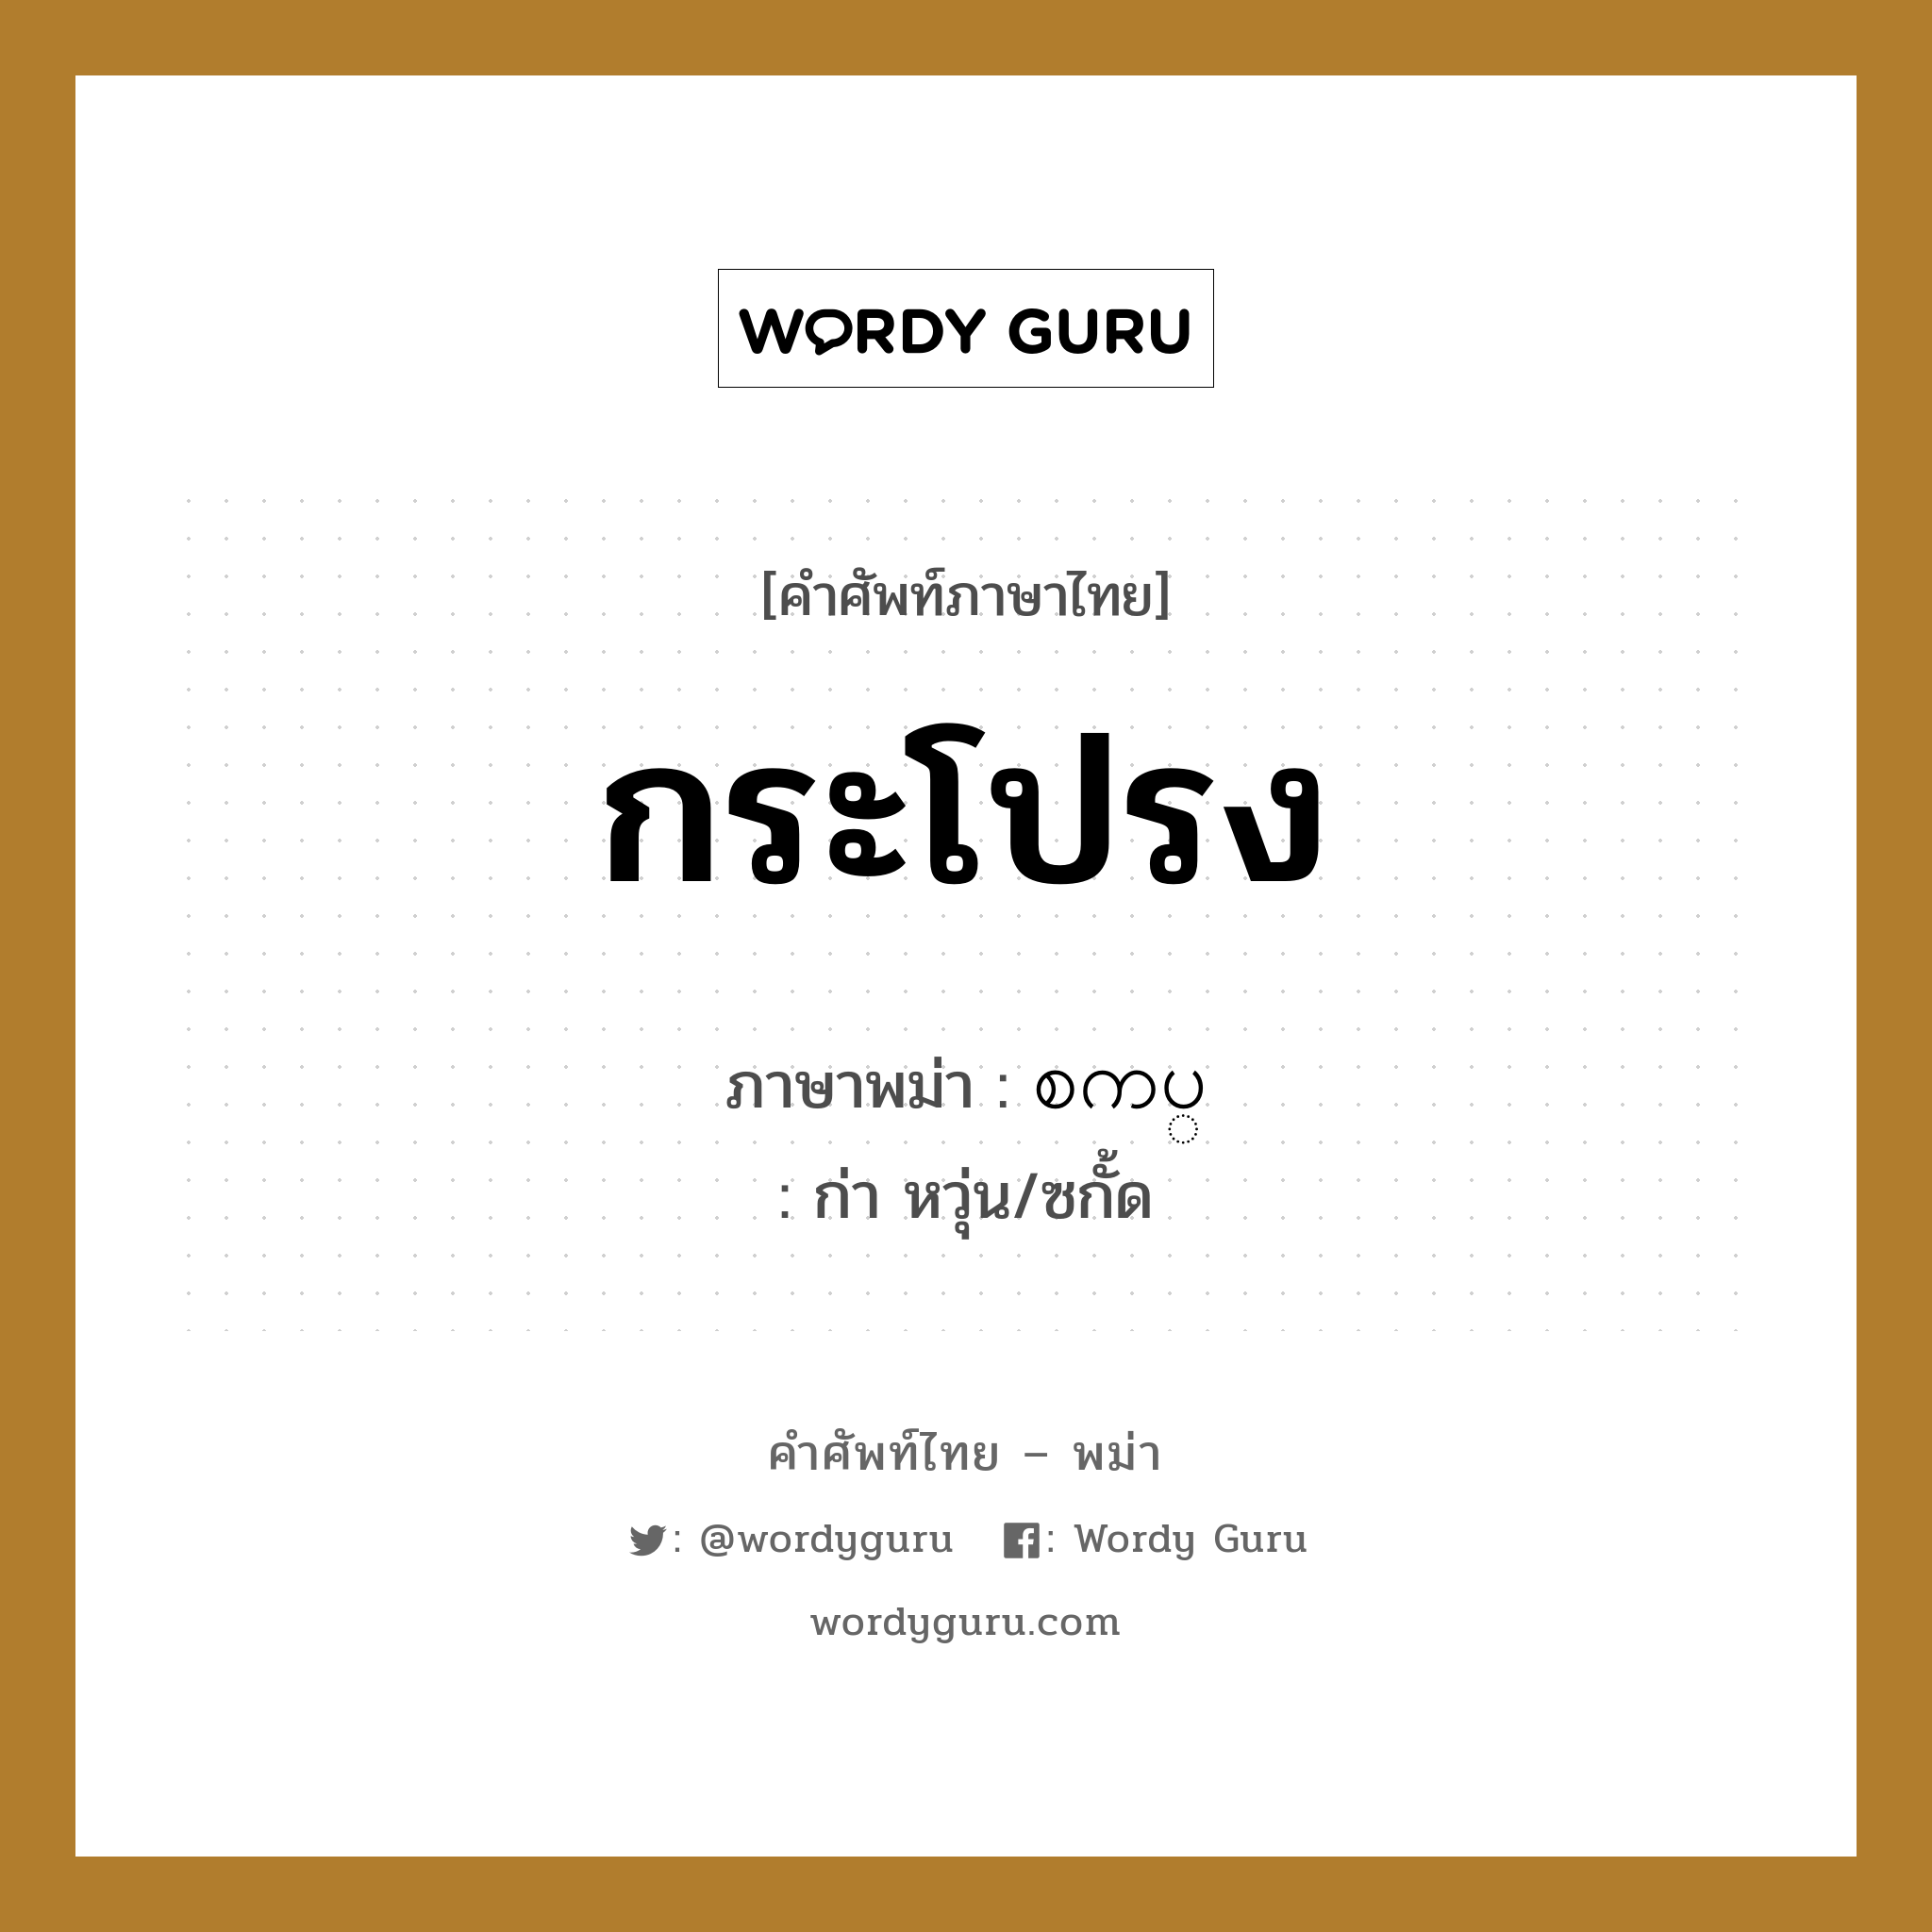 กระโปรง ภาษาพม่าคืออะไร, คำศัพท์ภาษาไทย - พม่า กระโปรง ภาษาพม่า စကပ္ หมวด หมวดของใช้ส่วนตัว ก่า หวุ่น/ซกั้ด หมวด หมวดของใช้ส่วนตัว